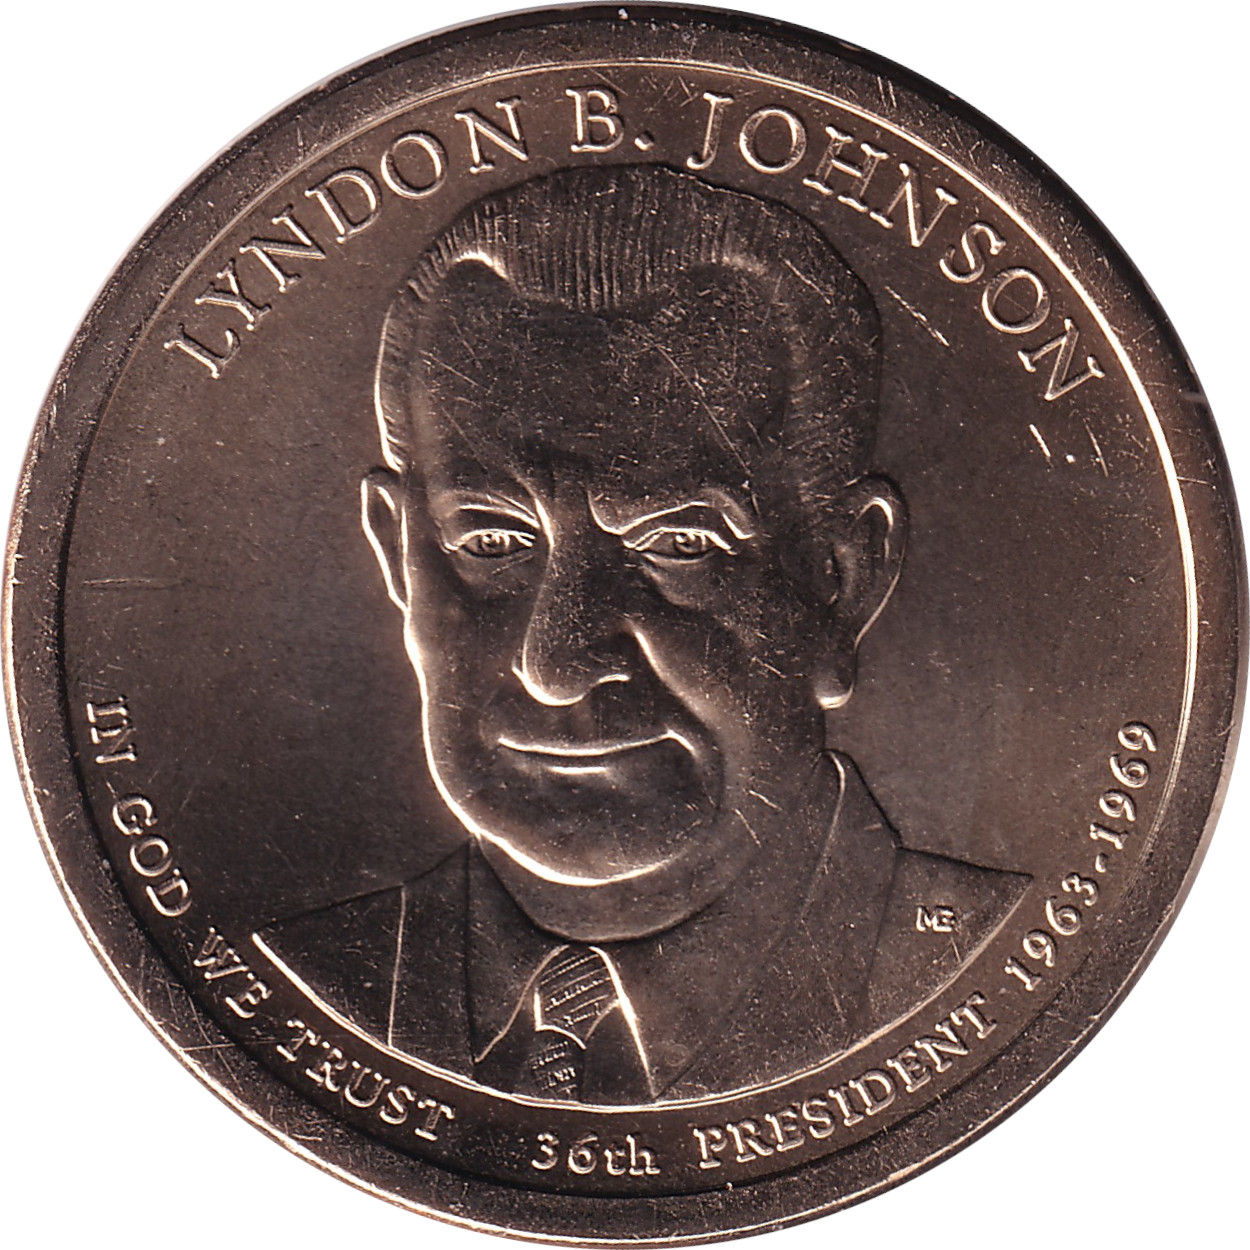 1 dollar - Lindon B. Johnson